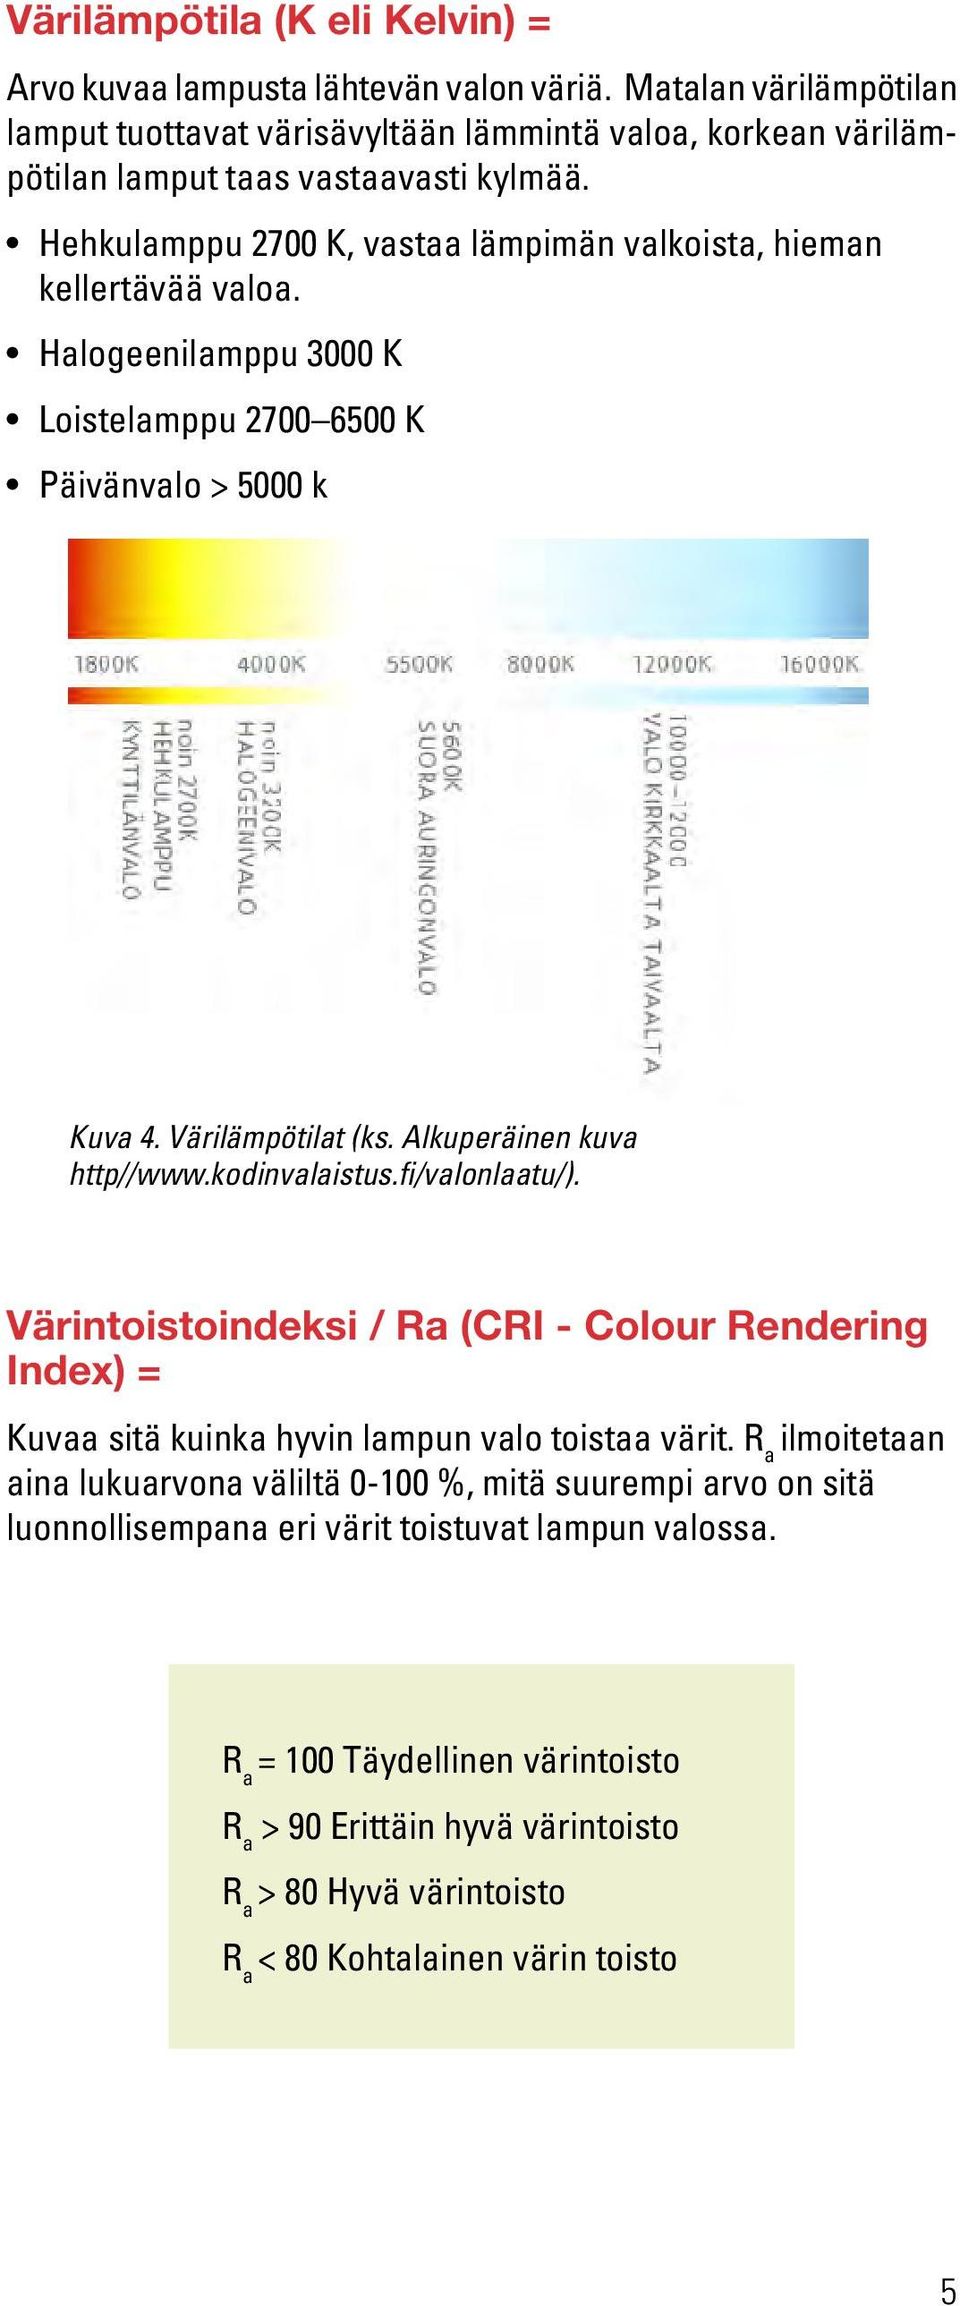 kodinvalaistus.fi/valonlaatu/). Värintoistoindeksi / Ra (CRI - Colour Rendering Index) = Kuvaa sitä kuinka hyvin lampun valo toistaa värit.